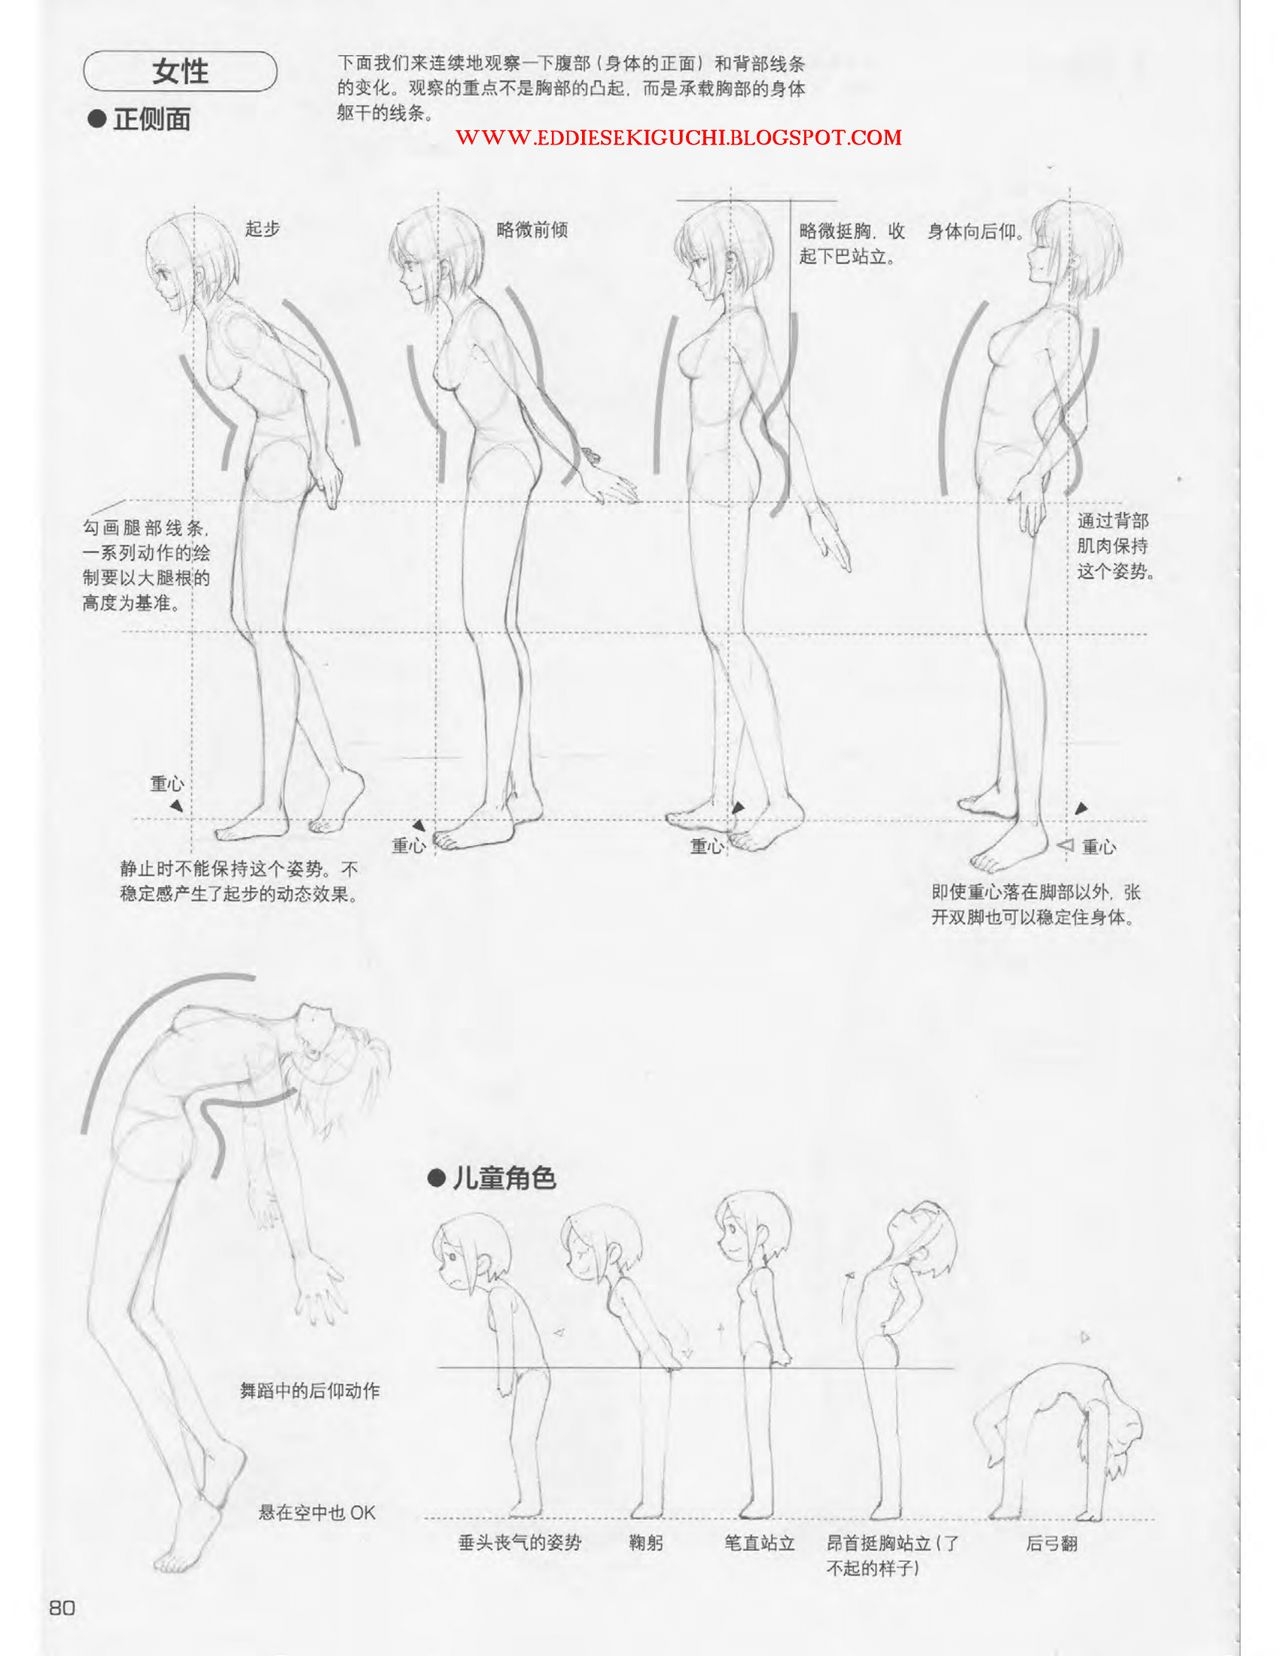 Japanese Manga Master Lecture 3: Lin Akira and Kakumaru Maru Talk About Glamorous Character Modeling 80